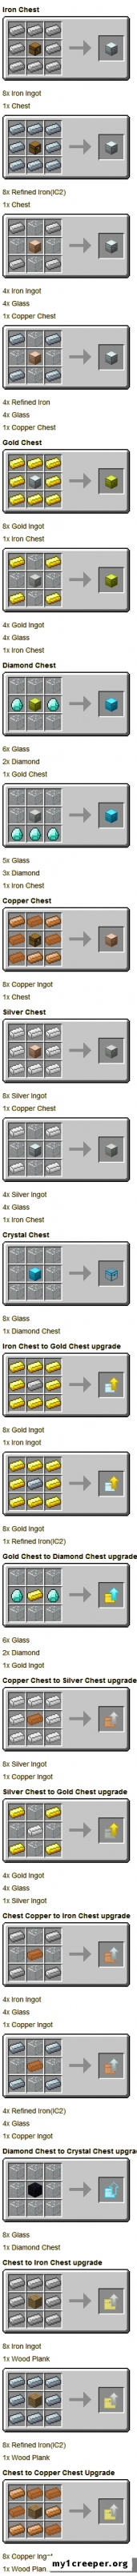 Мод iron chests для minecraft 1.7.10. Скриншот №4